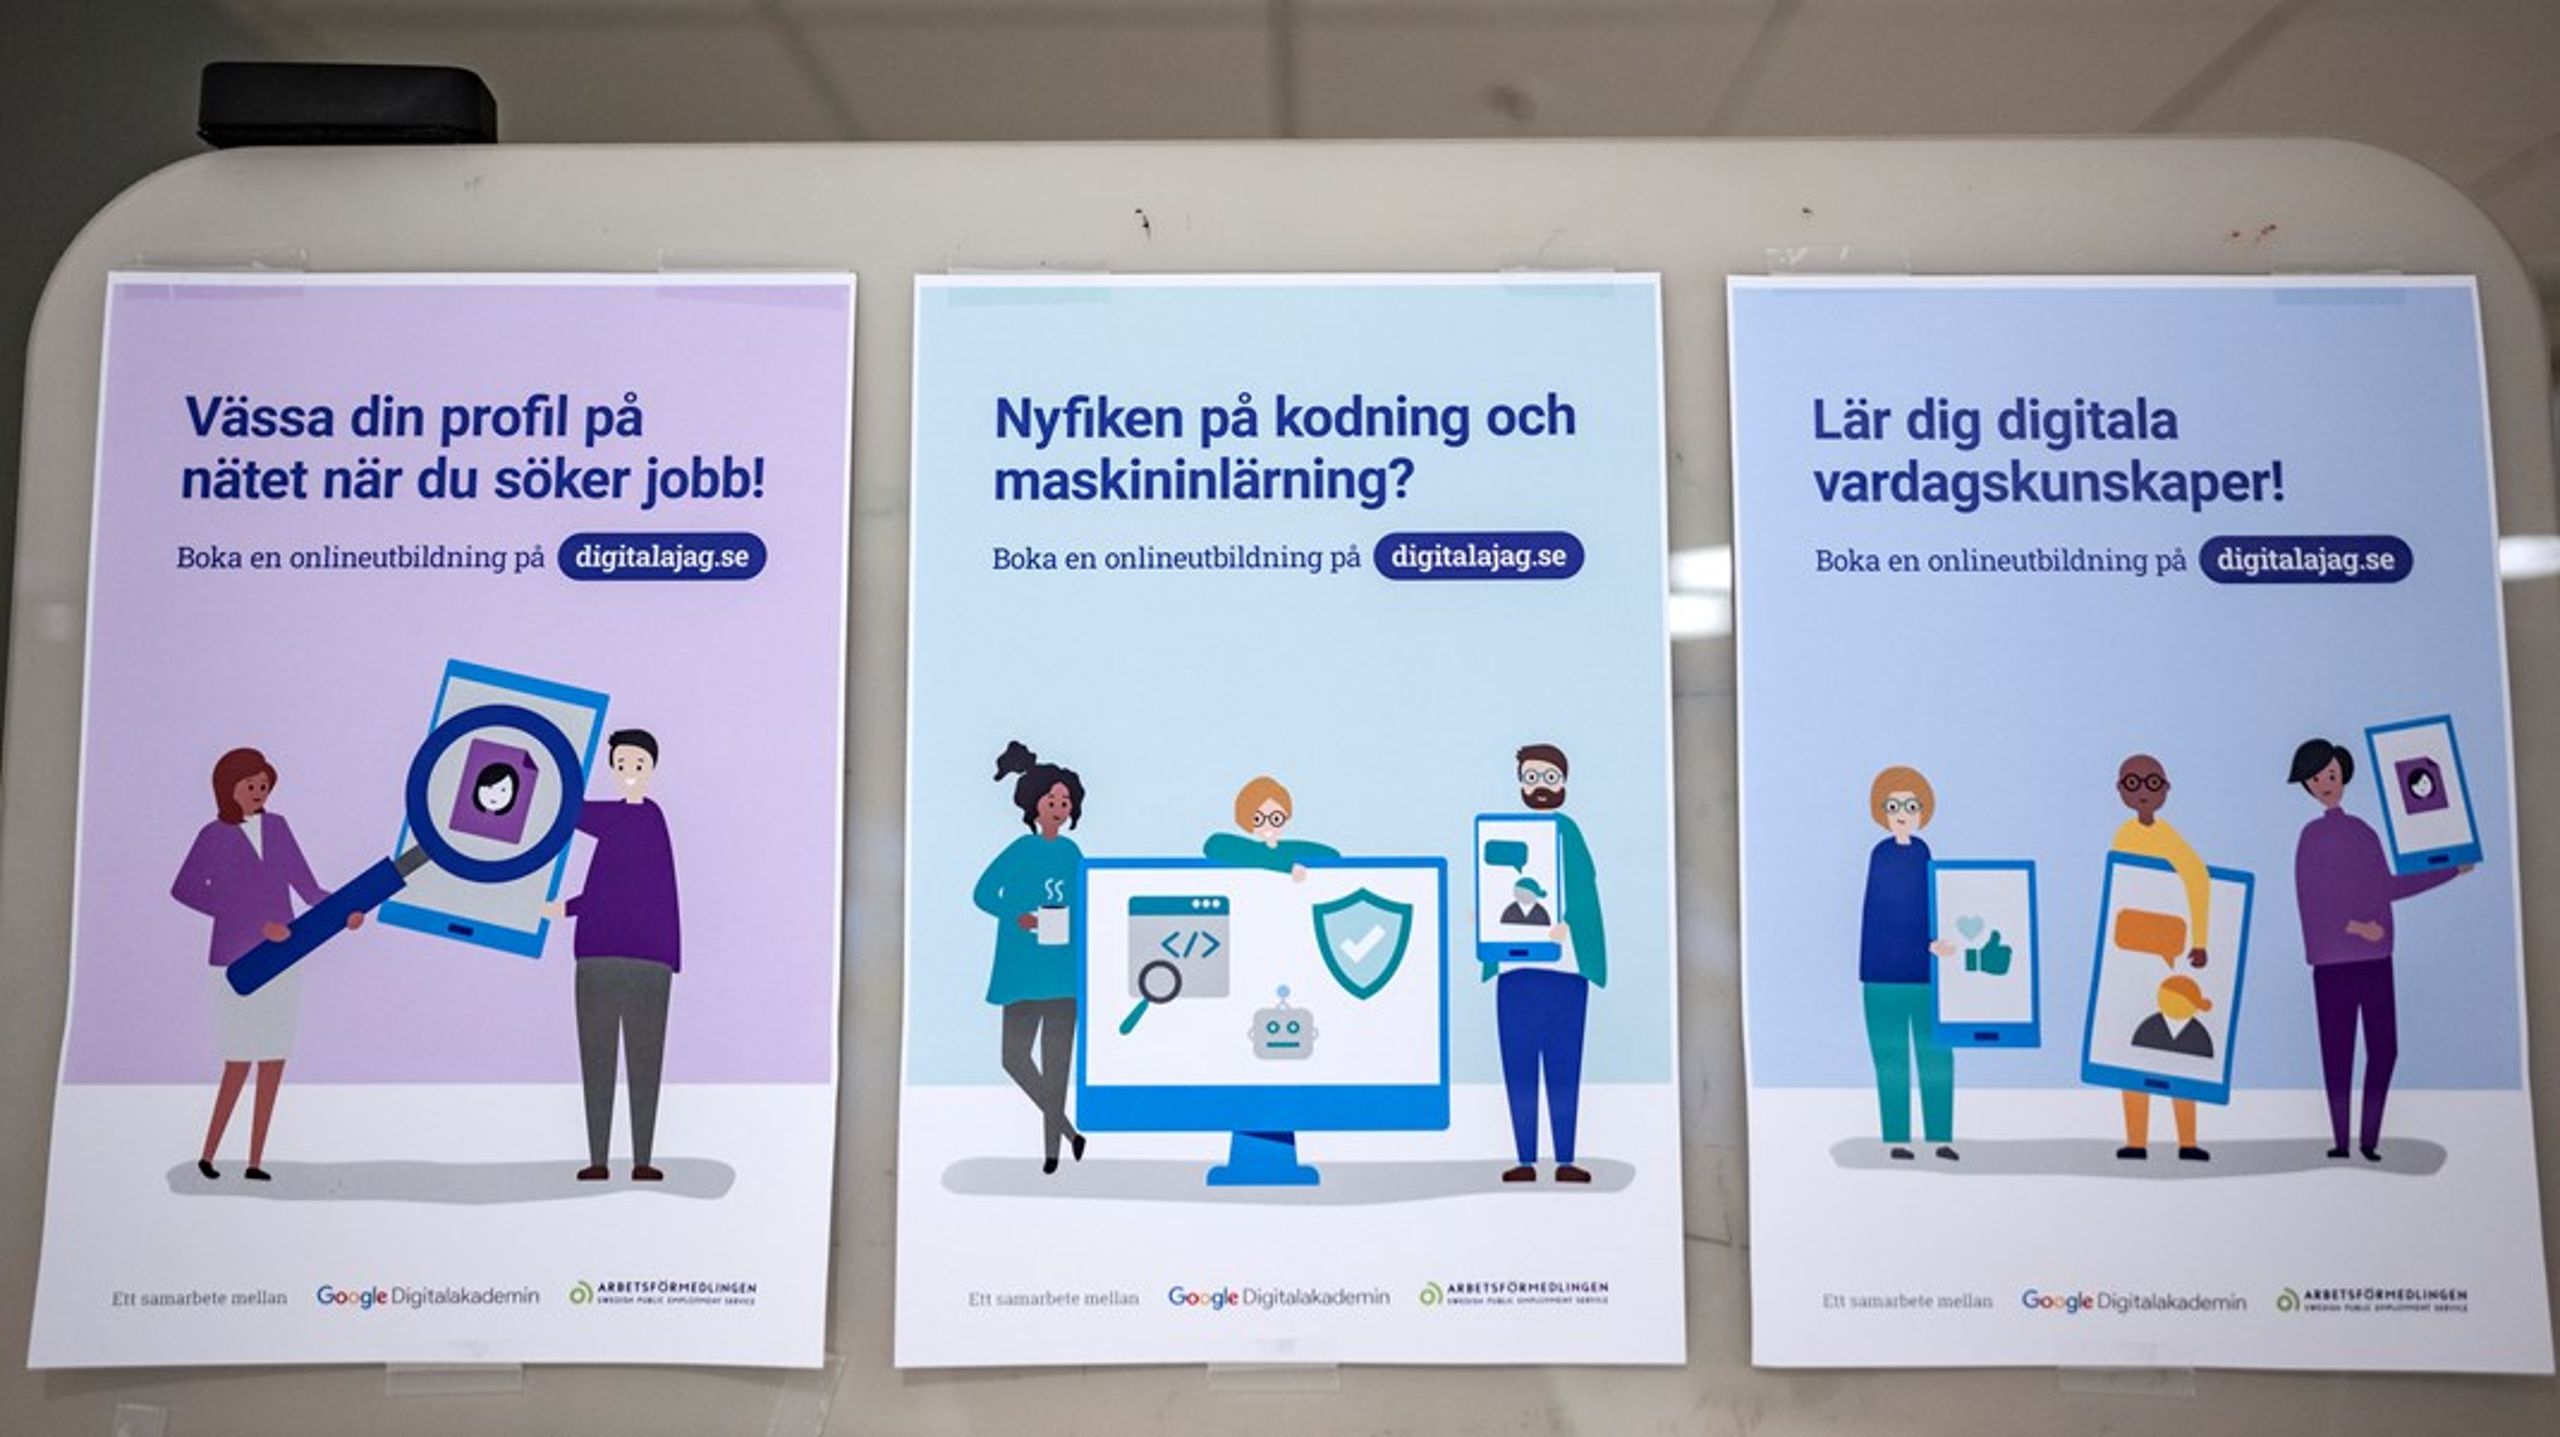 ”Arbetsförmedlingen har ansvaret för de arbetsmarknadspolitiska insatserna i Sverige. Men landets kommuner har i flera decennier sett hur Arbetsförmedlingen drar sig tillbaka.”